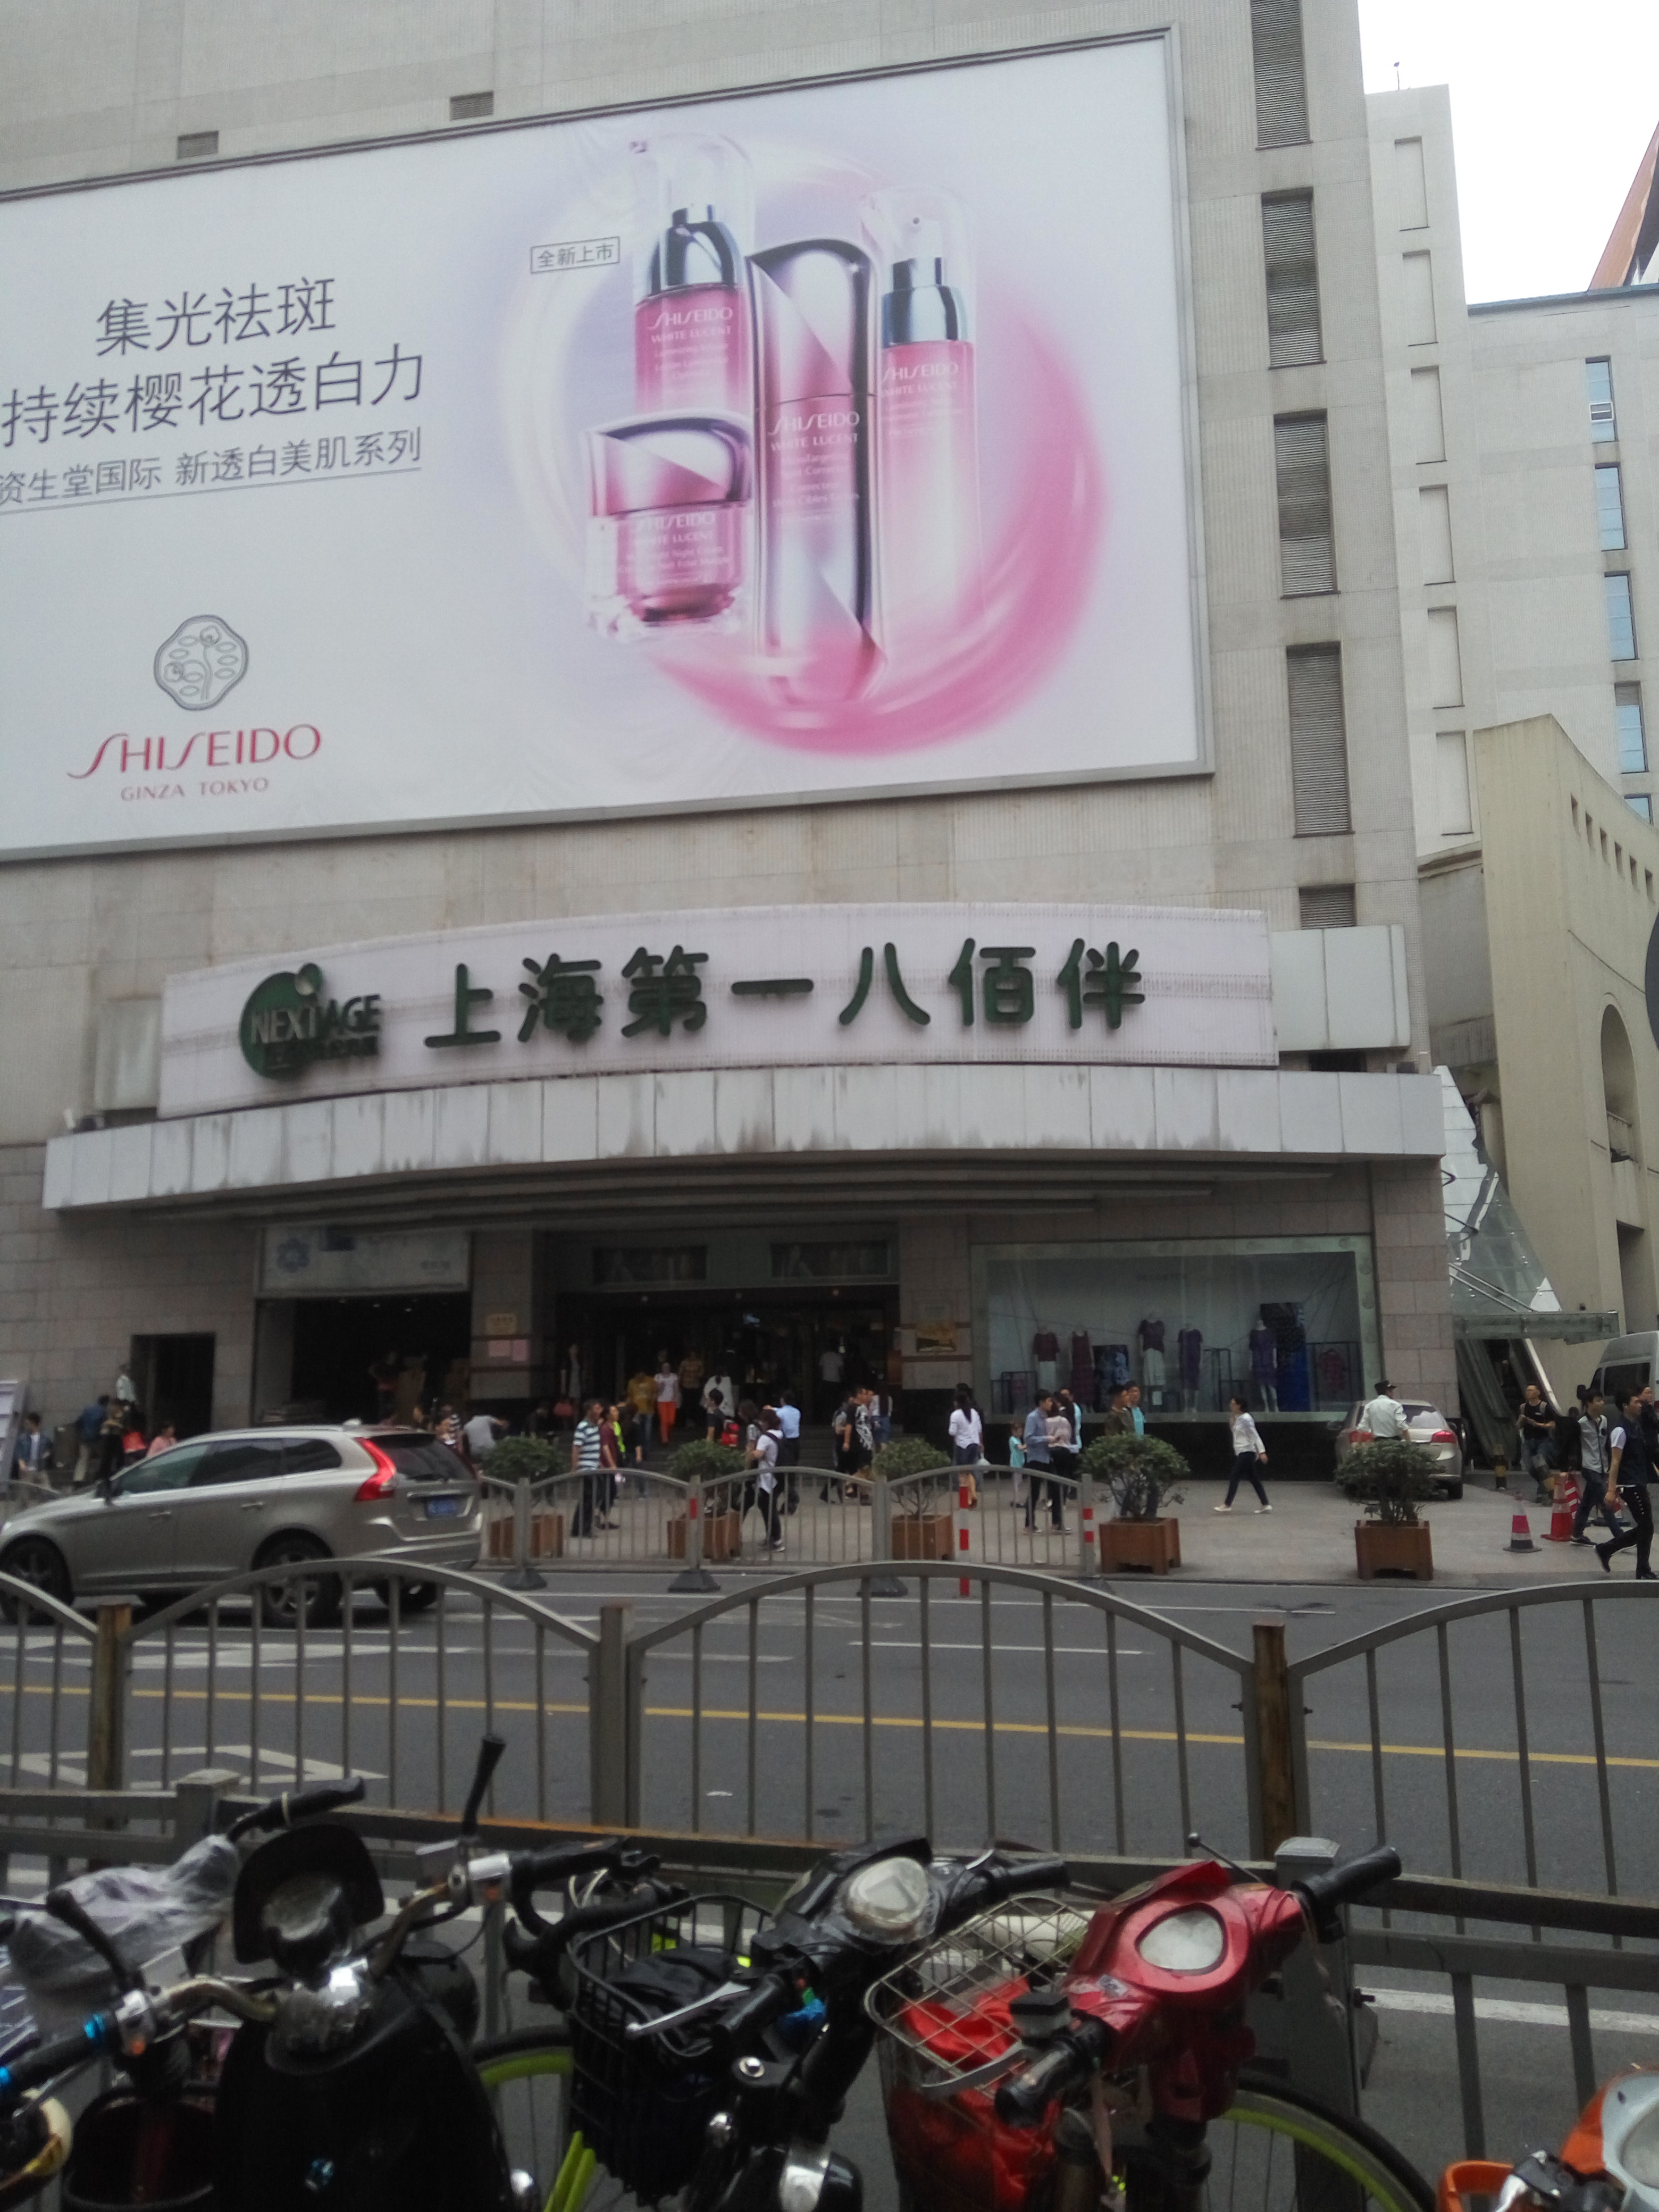 上海第一八佰伴购物攻略,第一八佰伴物中心/地址/电话/营业时间【携程